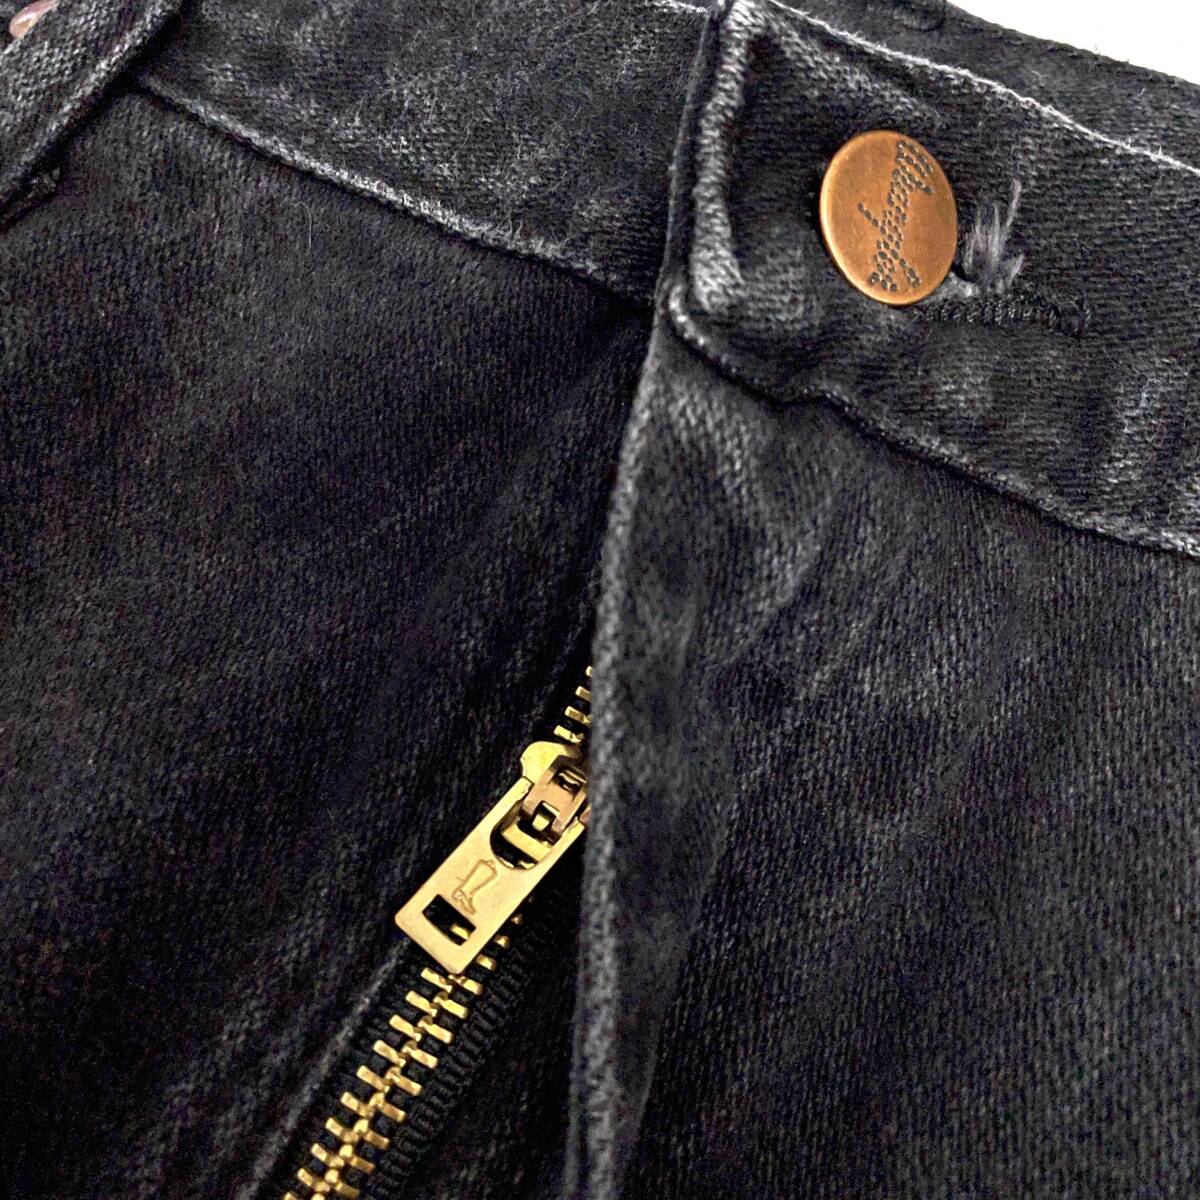 USA old clothes Wrangler black Denim pants W34 / 936WBK slim strut black jeans ji- bread Wrangler 